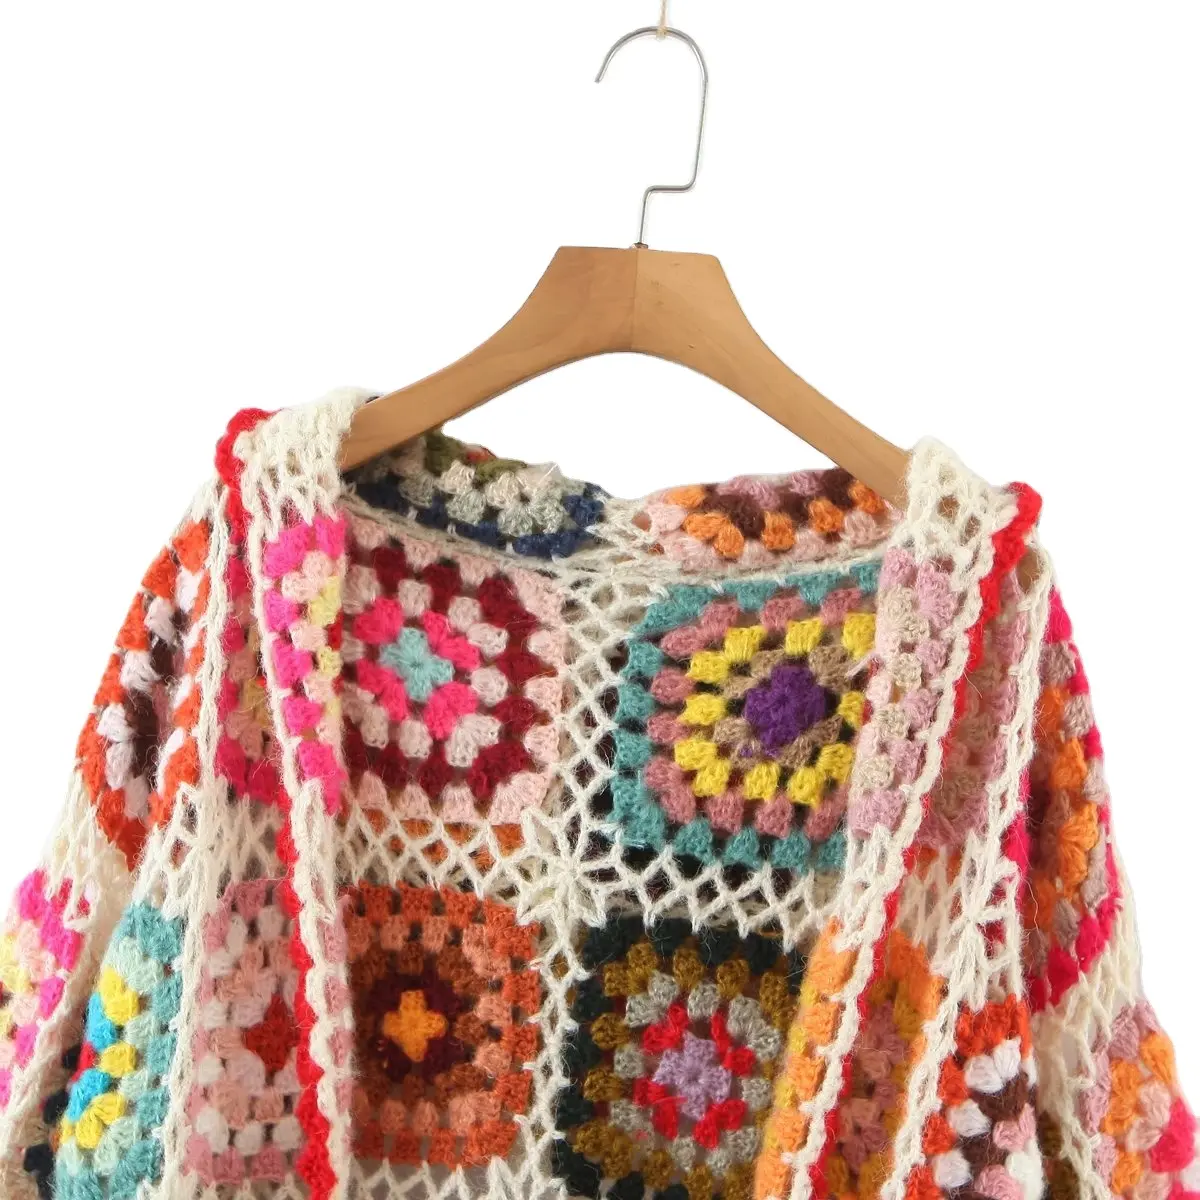 Hochwertige beste Strickjacke Kontrast Häkeln Bunte Schal Kragen Pullover für Frauen Schnellt rocknende Strickjacke Pullover OEM angepasst